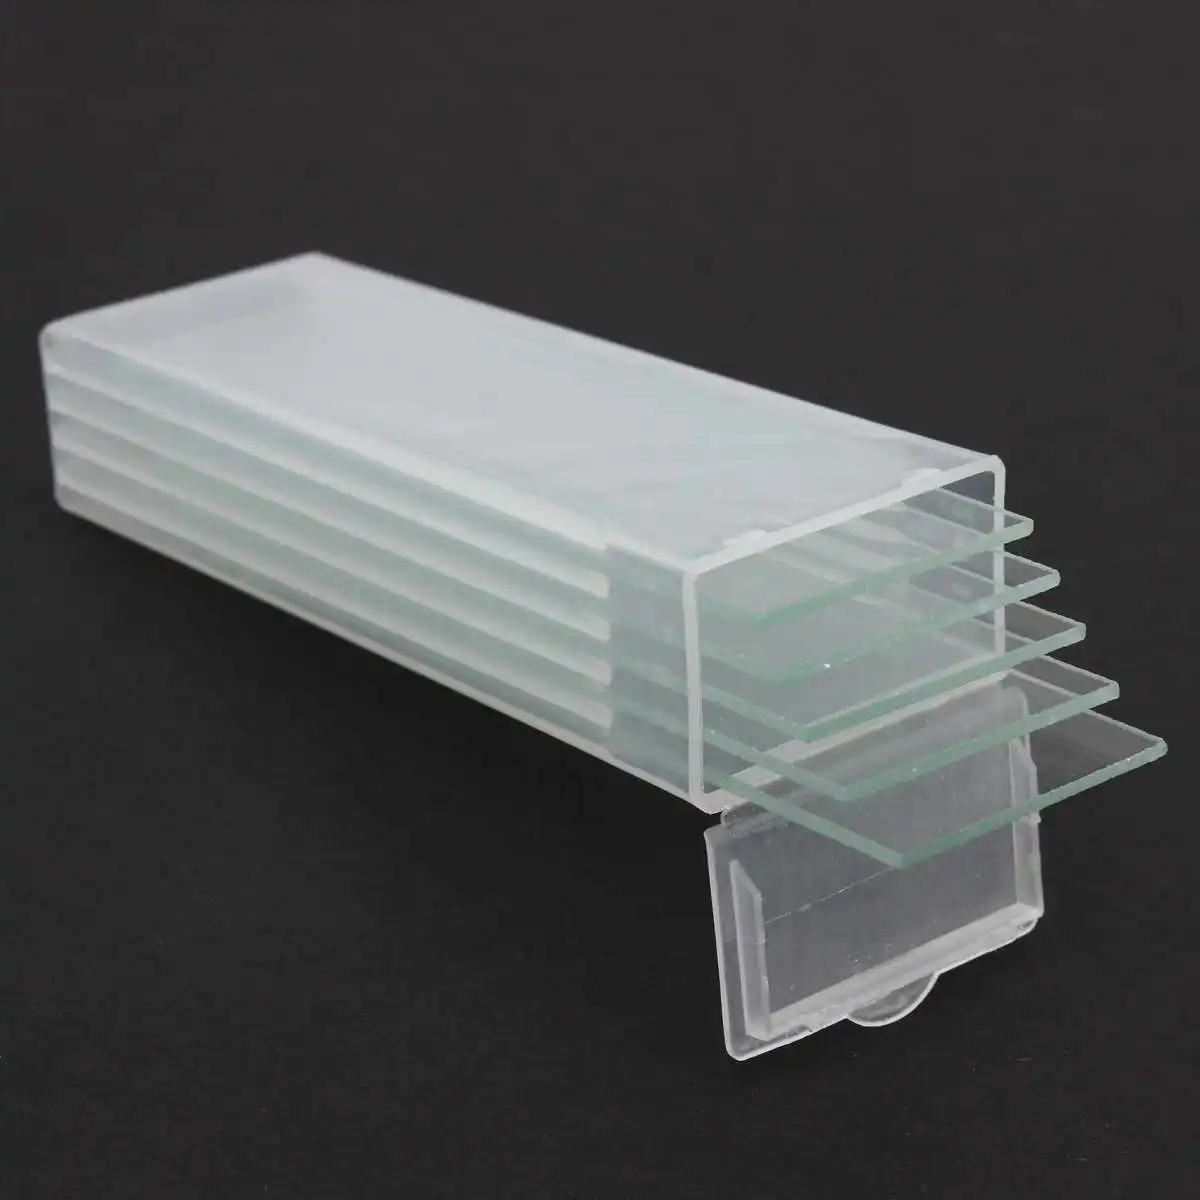 5 шт 1 мм Толщина полости стекло Coverslips одиночные вогнутые стеклянные слайды для микроскопа многоразовые лабораторные пустые образцы крышки стекла